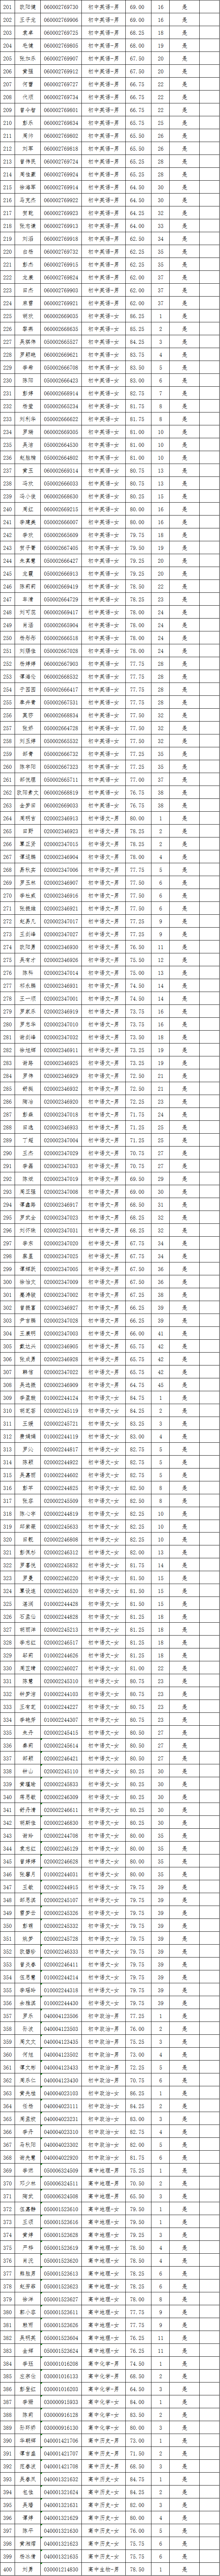 2021年长沙县第—批教师招聘入围试教人员名单公示(图11)